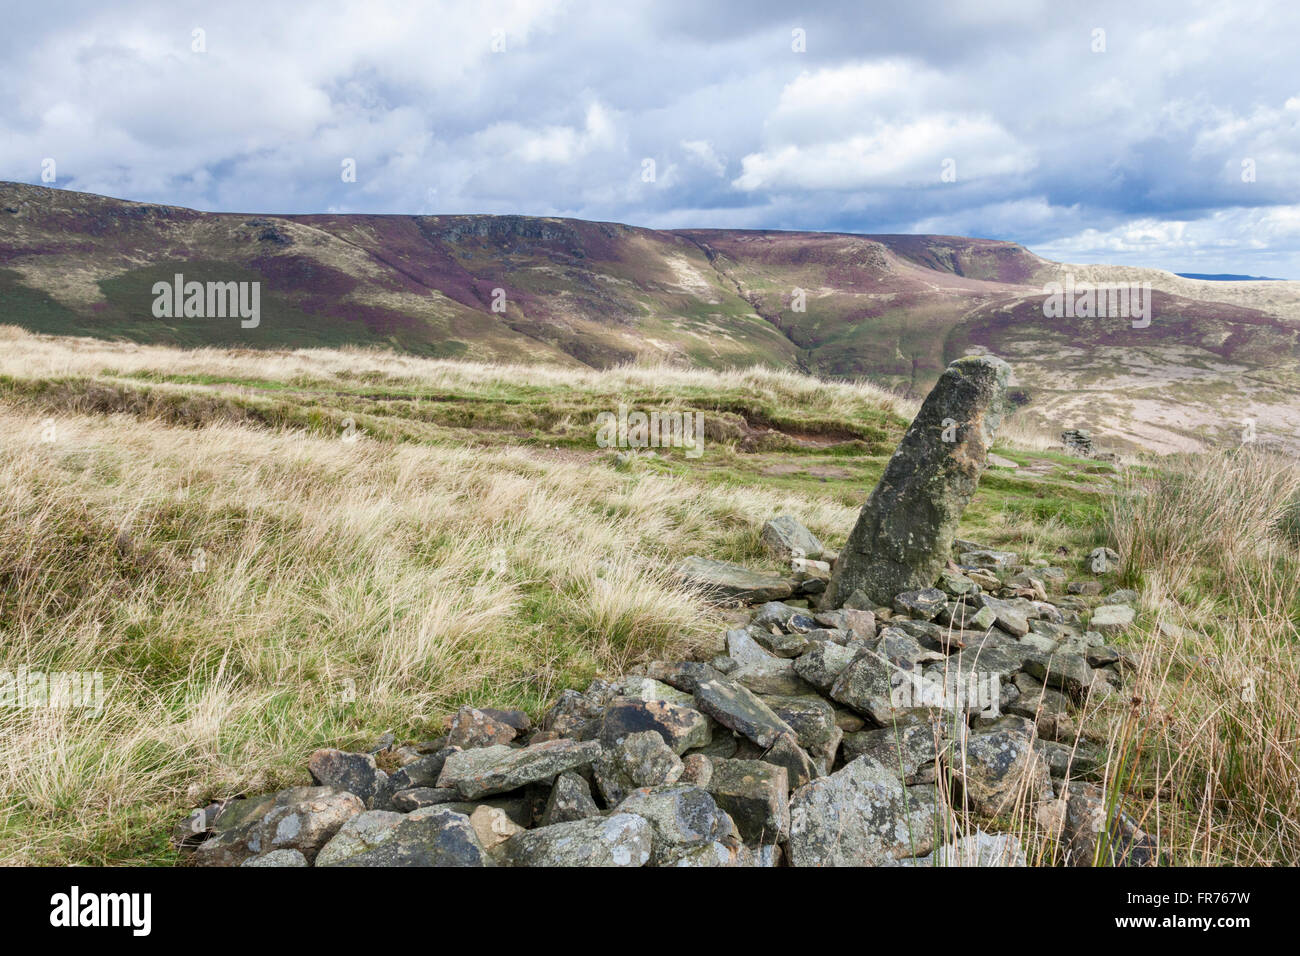 Mur de pierre effondrés sur landes sauvages dans le noir, pointe avec Kinder Scout dans la distance. Derbyshire Peak District National Park, Angleterre, Royaume-Uni. Banque D'Images